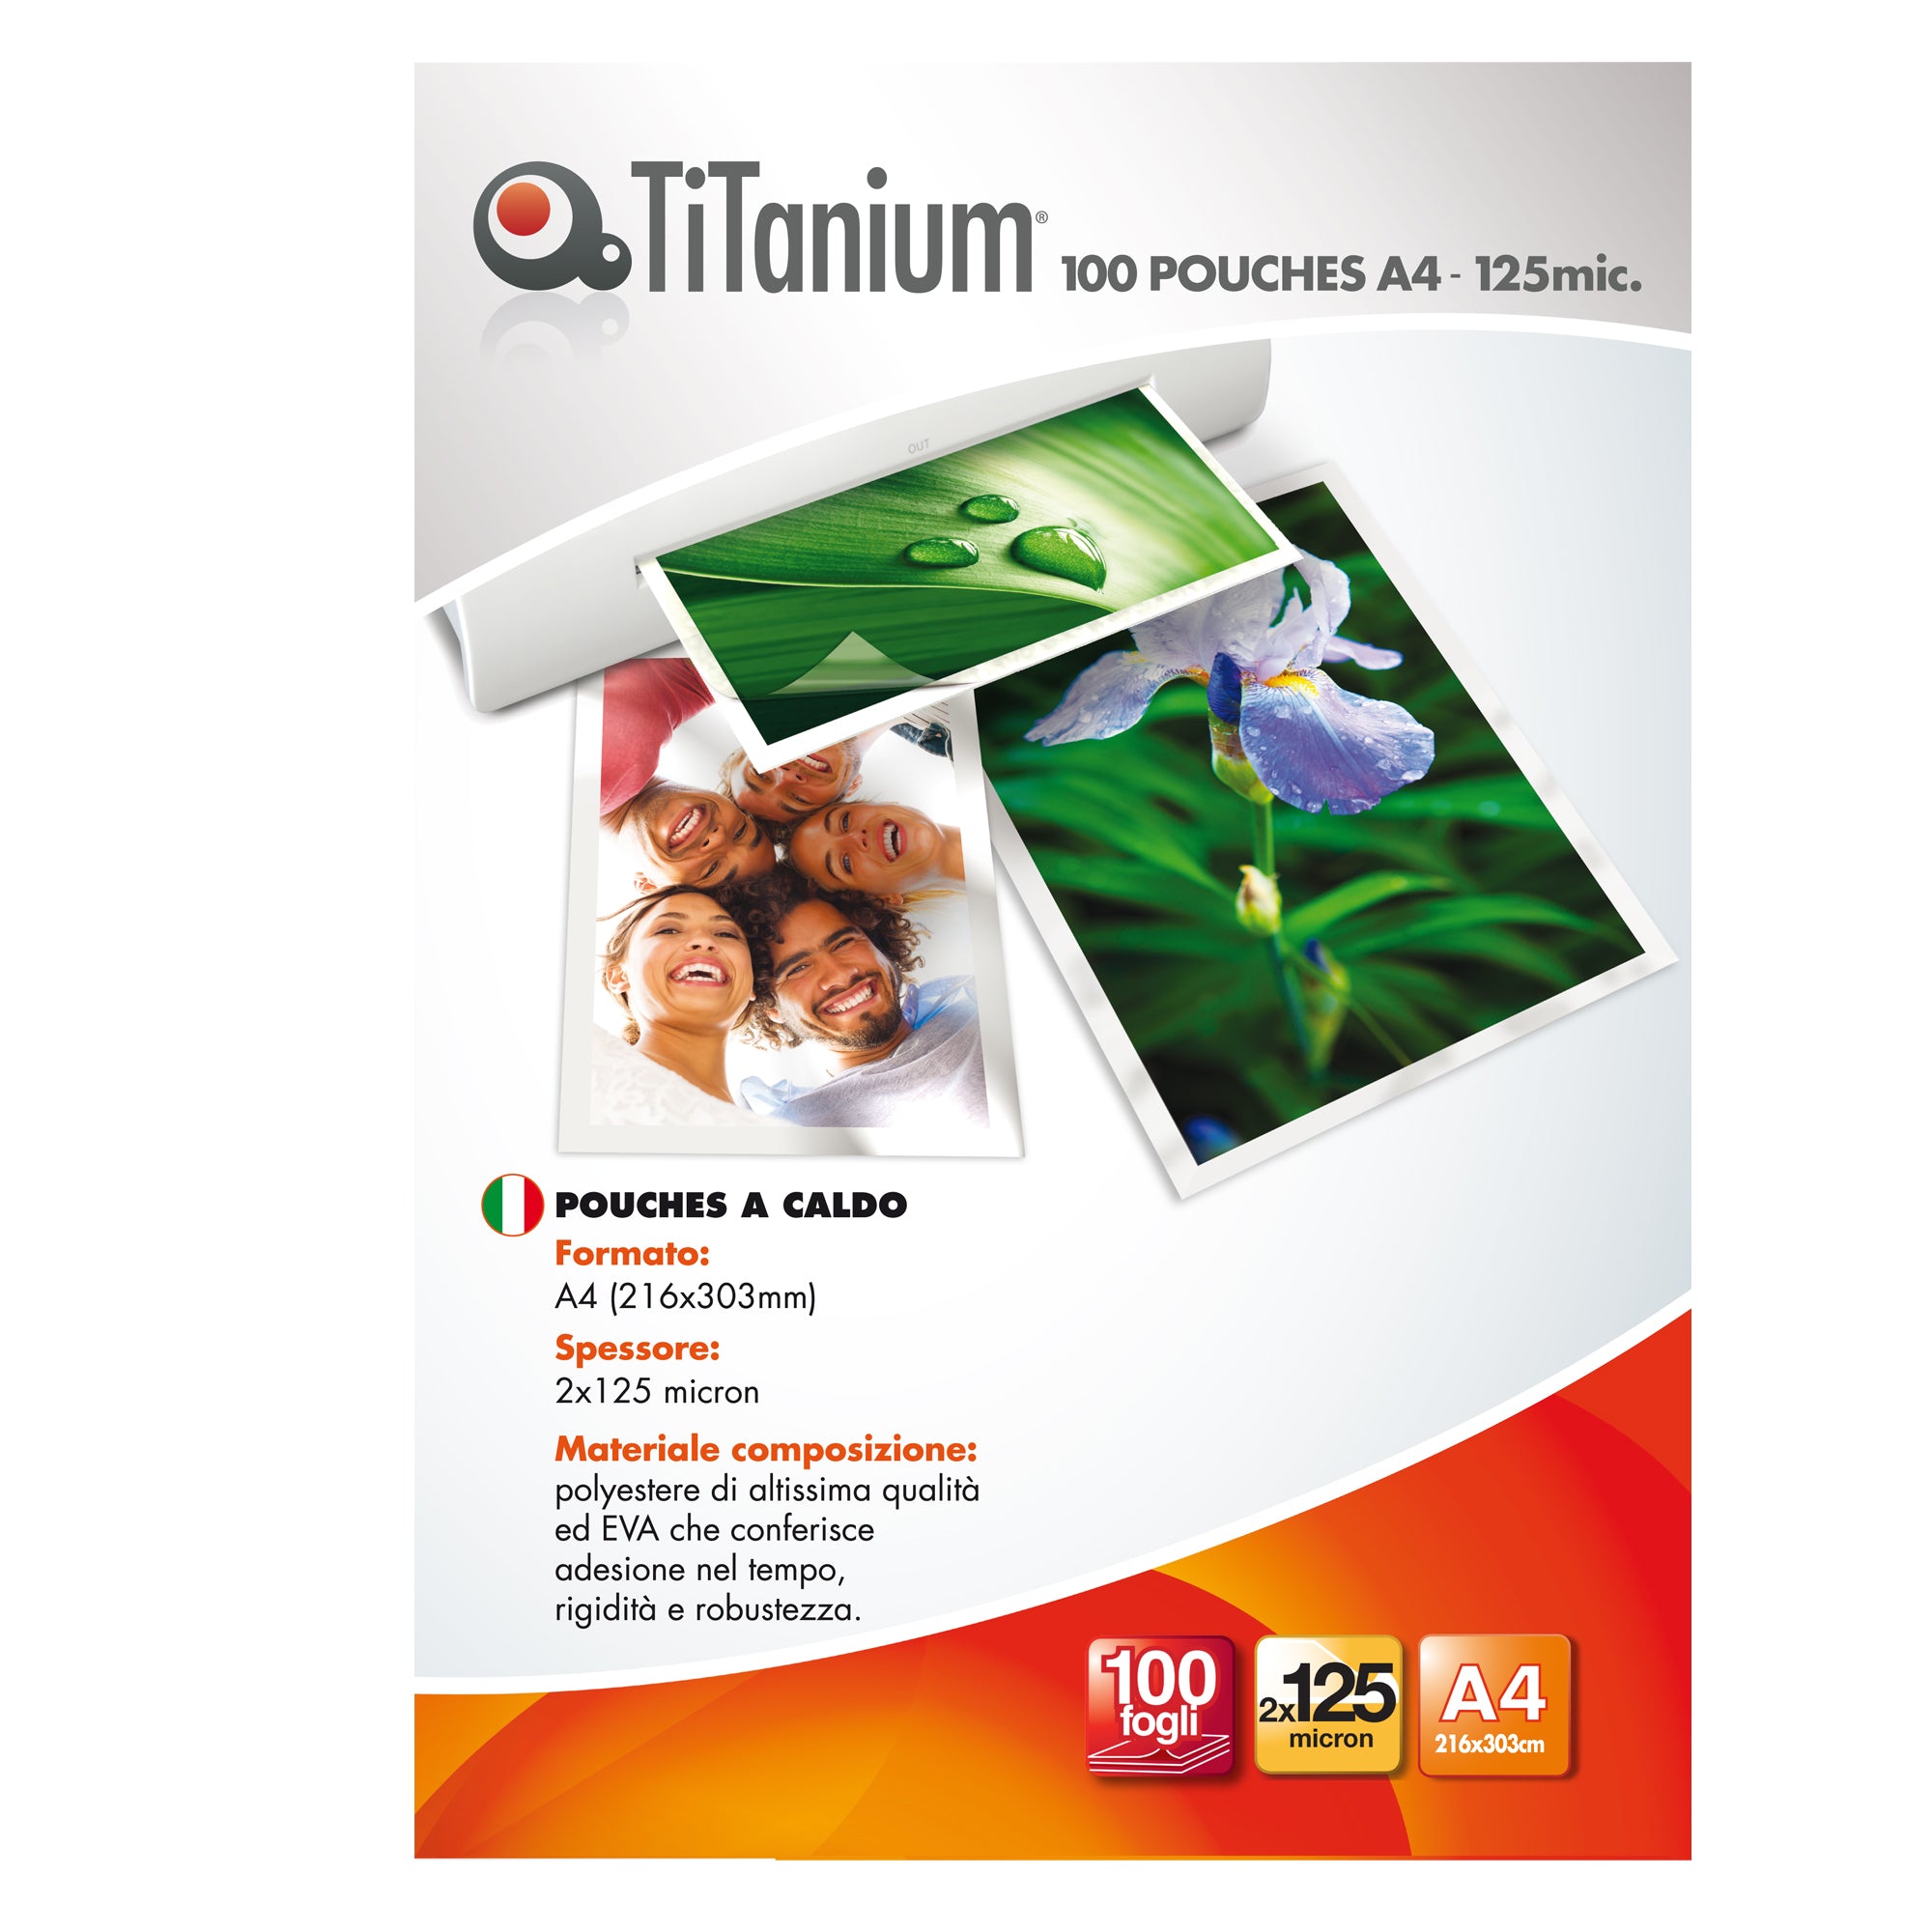 titanium-100-pouches-216x303mm-a4-125my